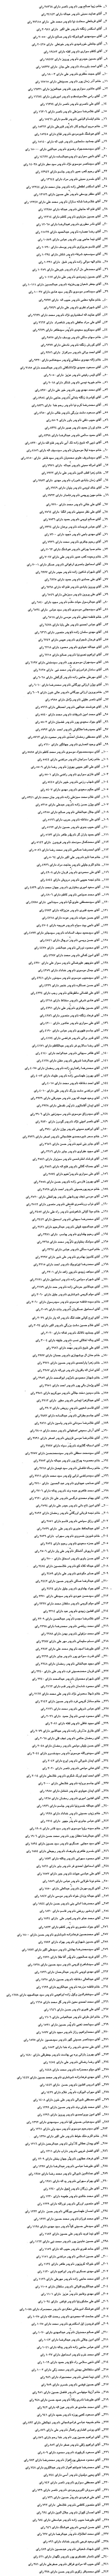 نتایج شمارش آرای انتخابات دوره چهارم شورای اسلامی شهر اهواز